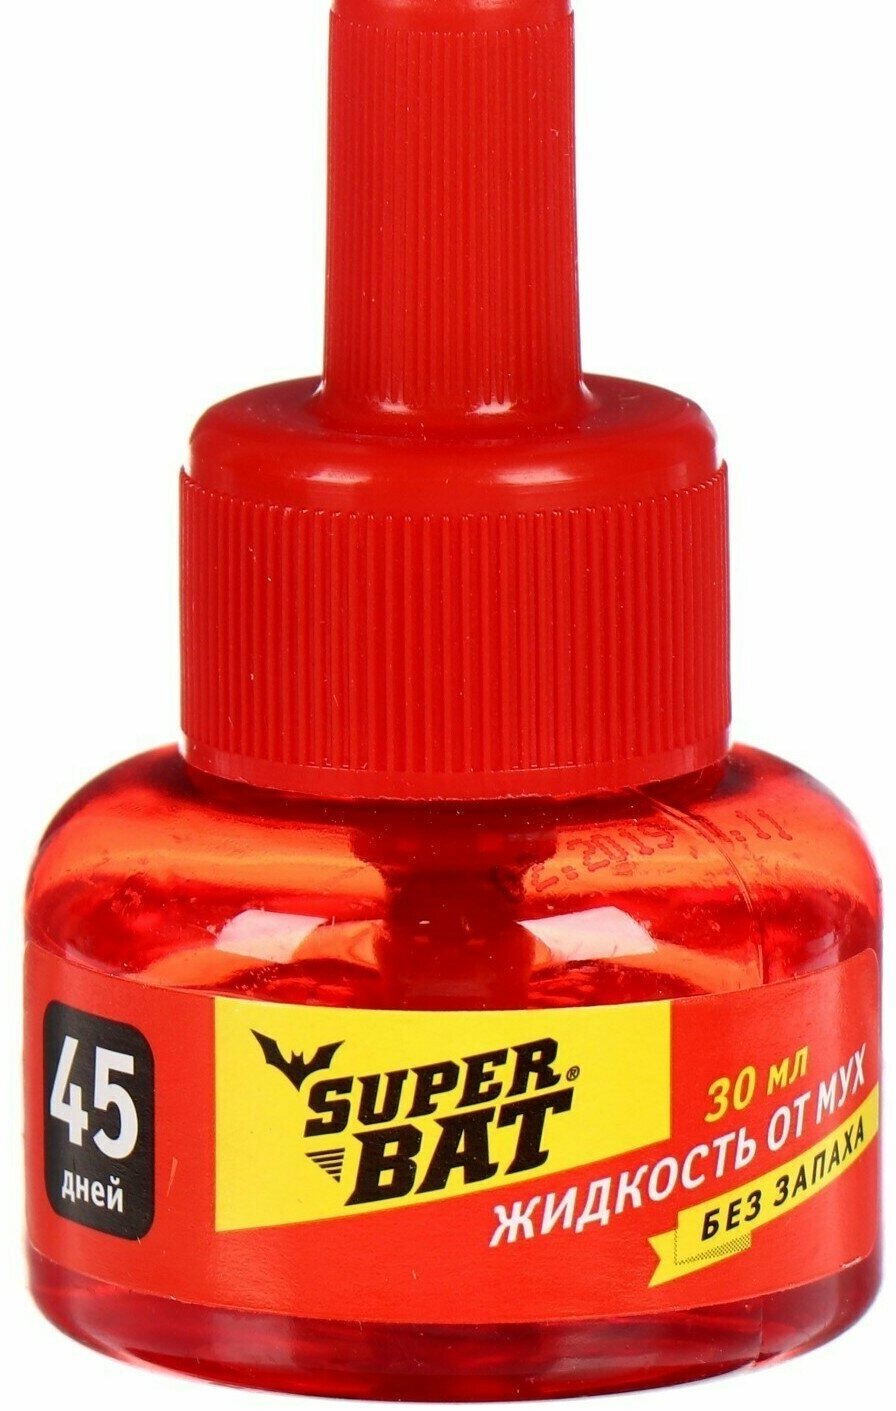 Дополнительный флакон-жидкость от мух "SuperBAT", доп. флакон, 45 дней, 30 мл, 2 штуки